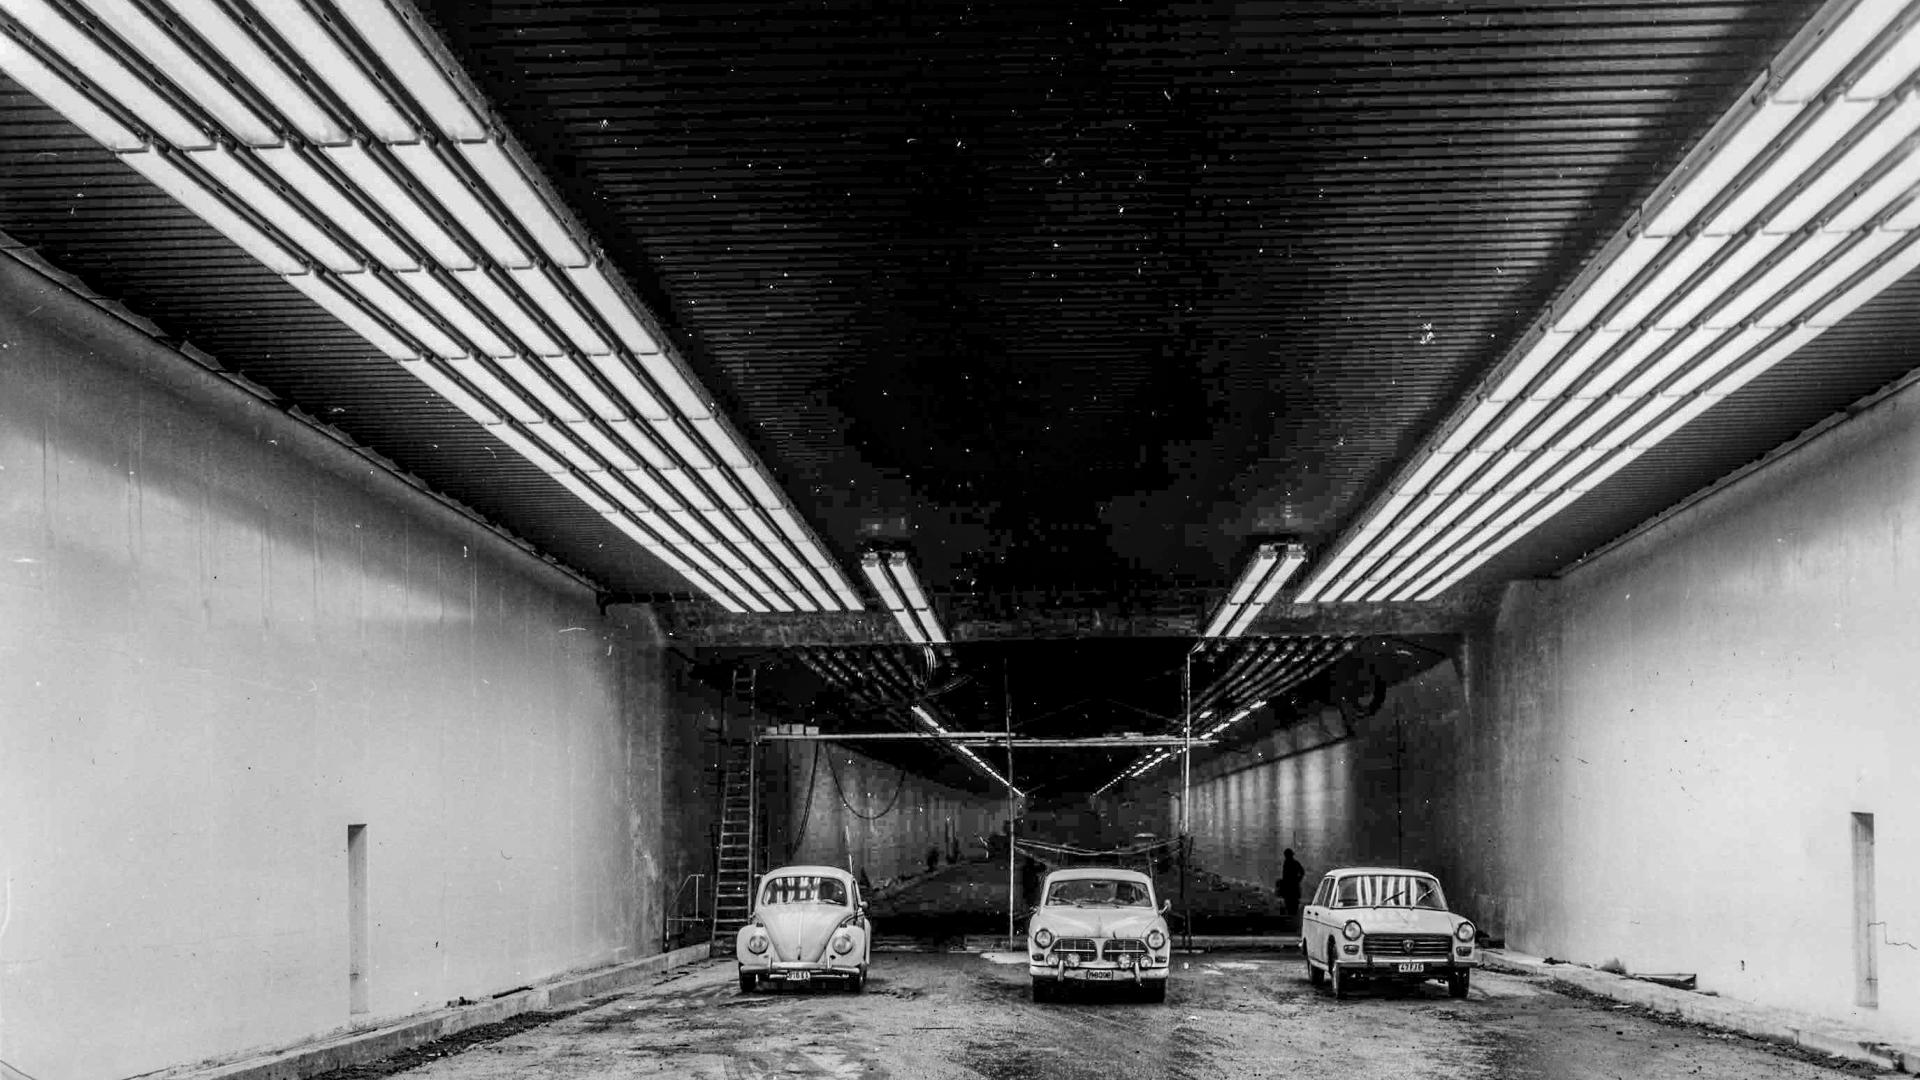 KT - blik in de historie - met 3 auto's worden de 3 rijstroken in de tunnel aangeduid